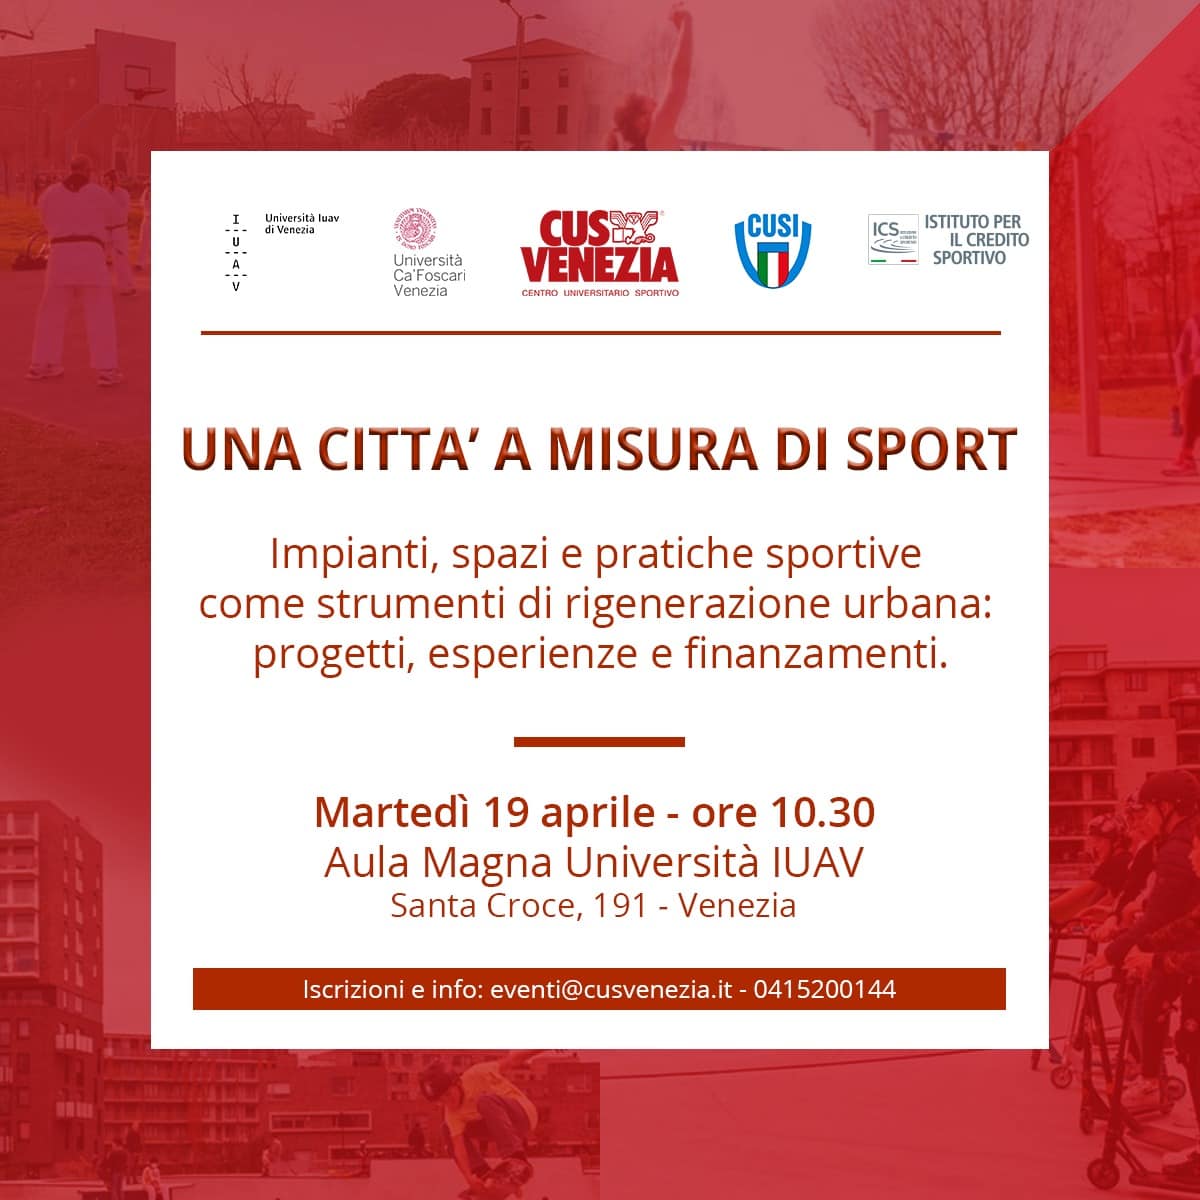 “Una città a misura di sport” – Martedì 19 aprile, Aula Magna Università Iuav